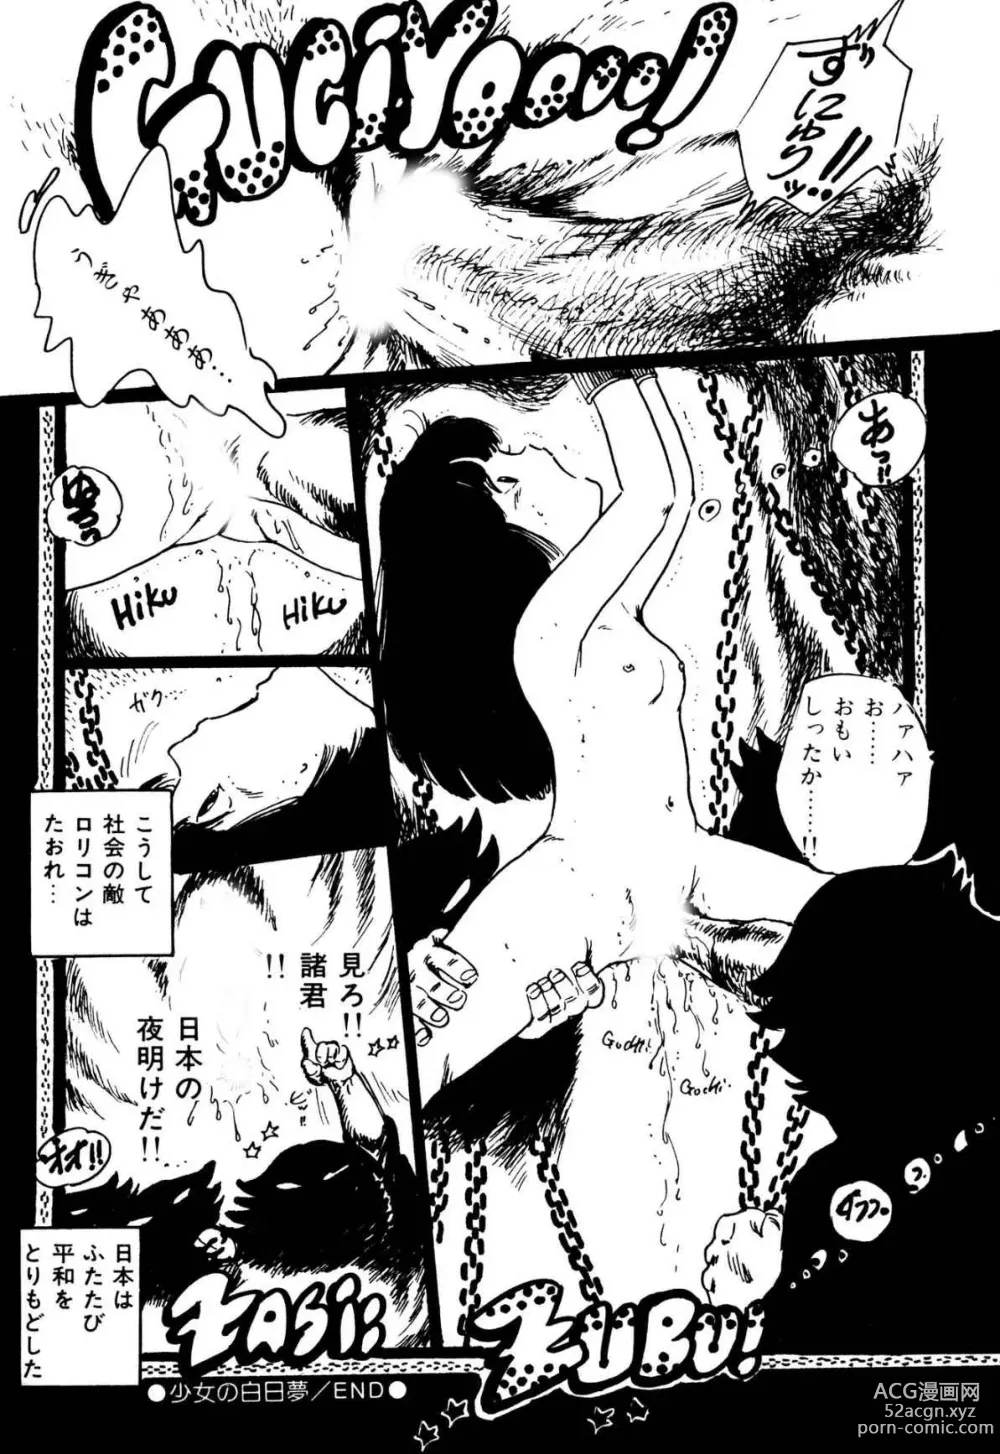 Page 198 of manga Koisuru Yousei